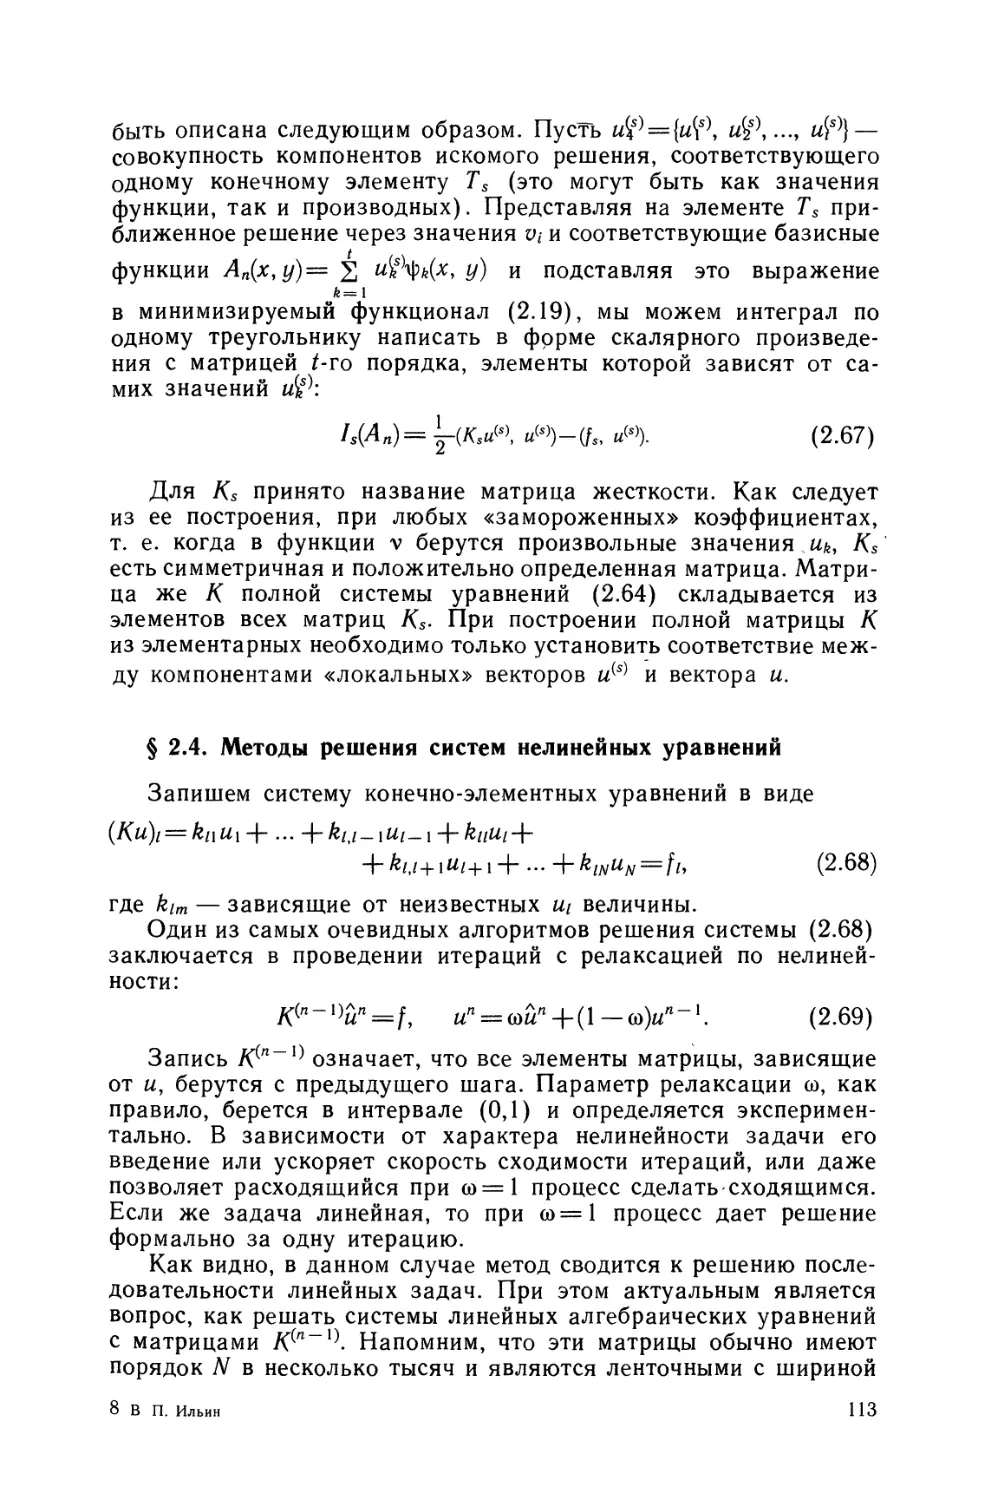 § 2.4. Методы решения систем нелинейных уравнений.